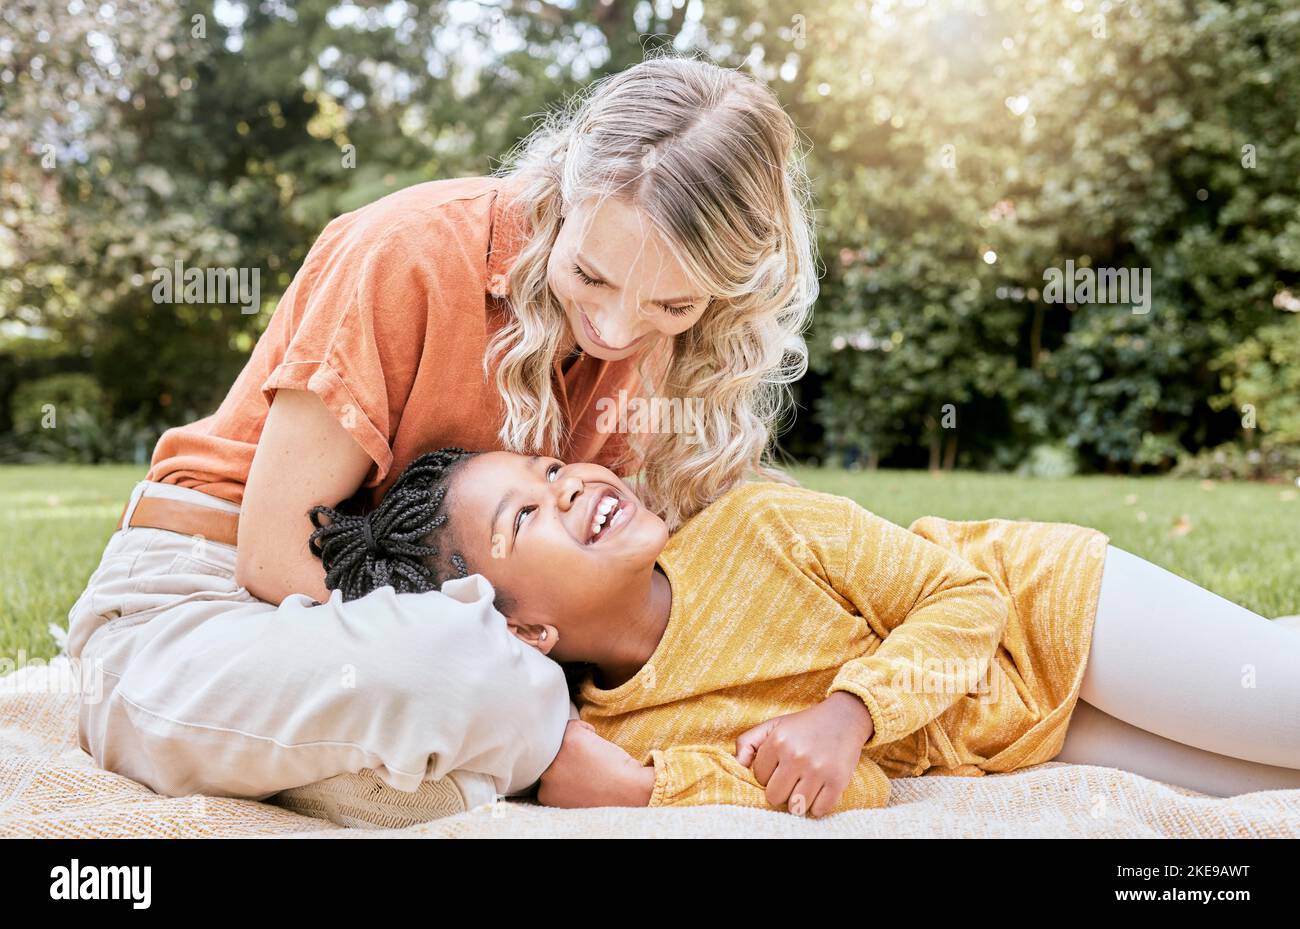 Famille heureuse, interraciale et fille et mère se détendre dans un parc, heureux et sourire tout en se reposant sur l'herbe ensemble. Amour, famille et enfant noir riant Banque D'Images